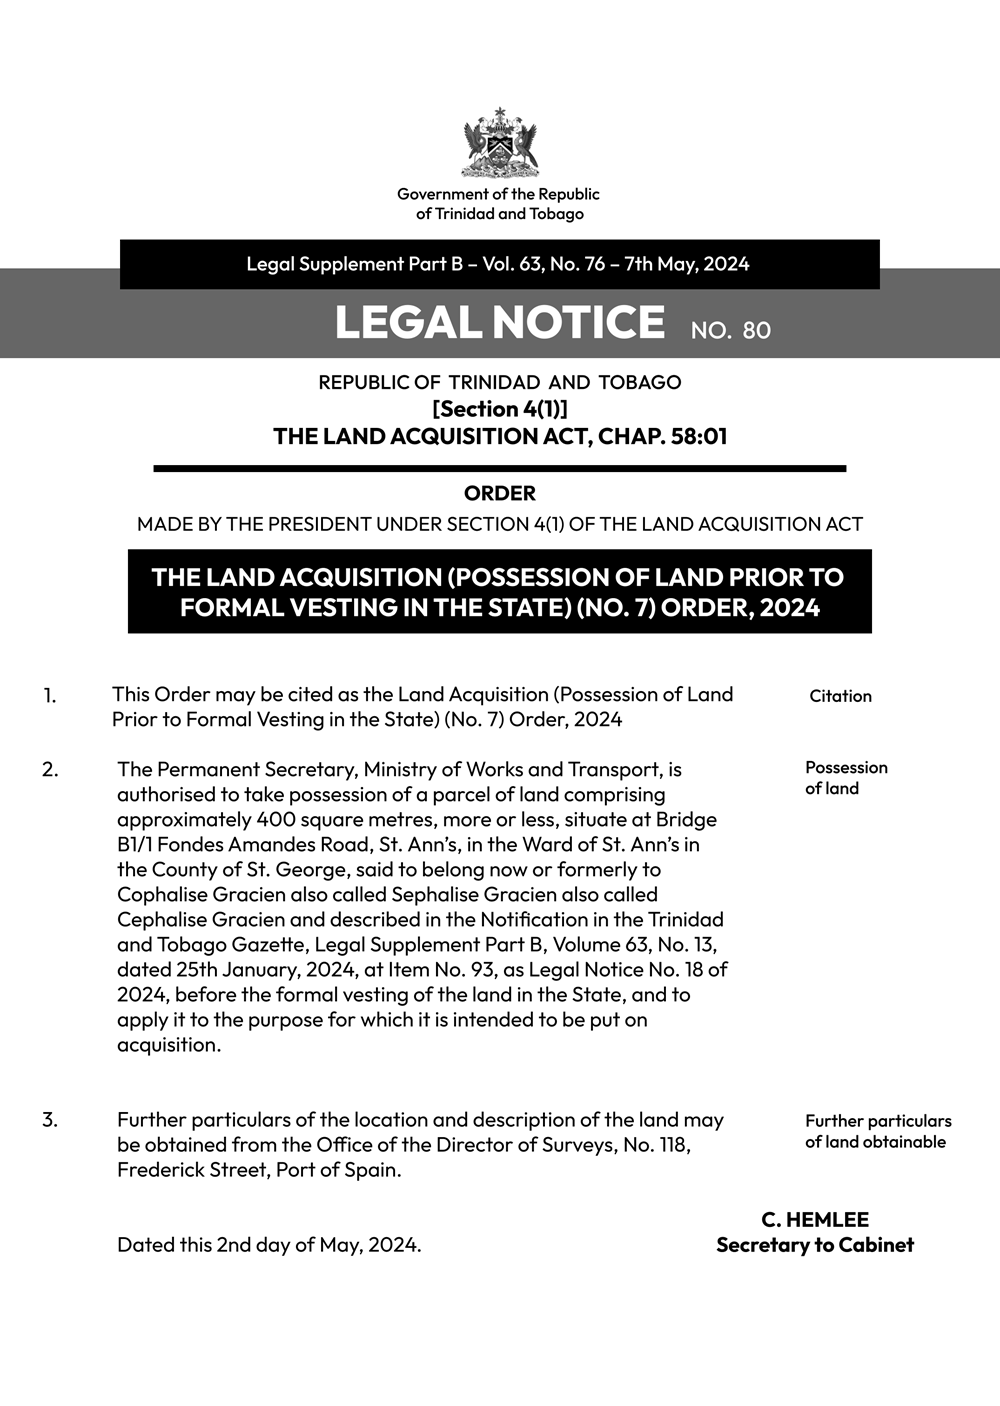 LEGAL-Notice-Land-Acquisition-80.png